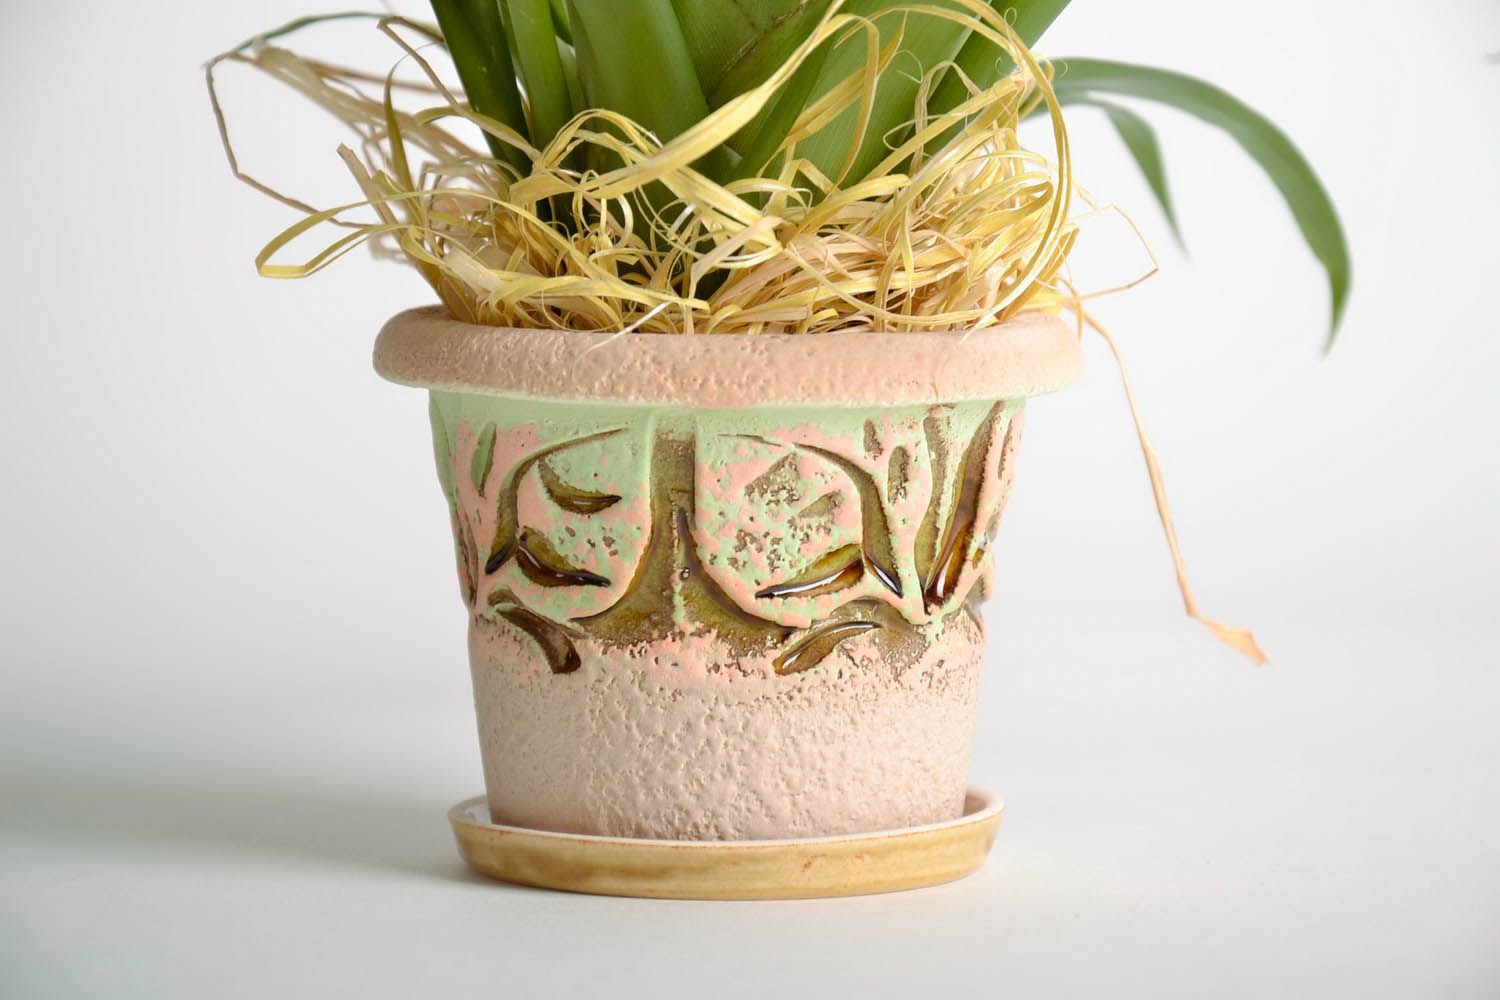  Blumentopf aus Keramik foto 1